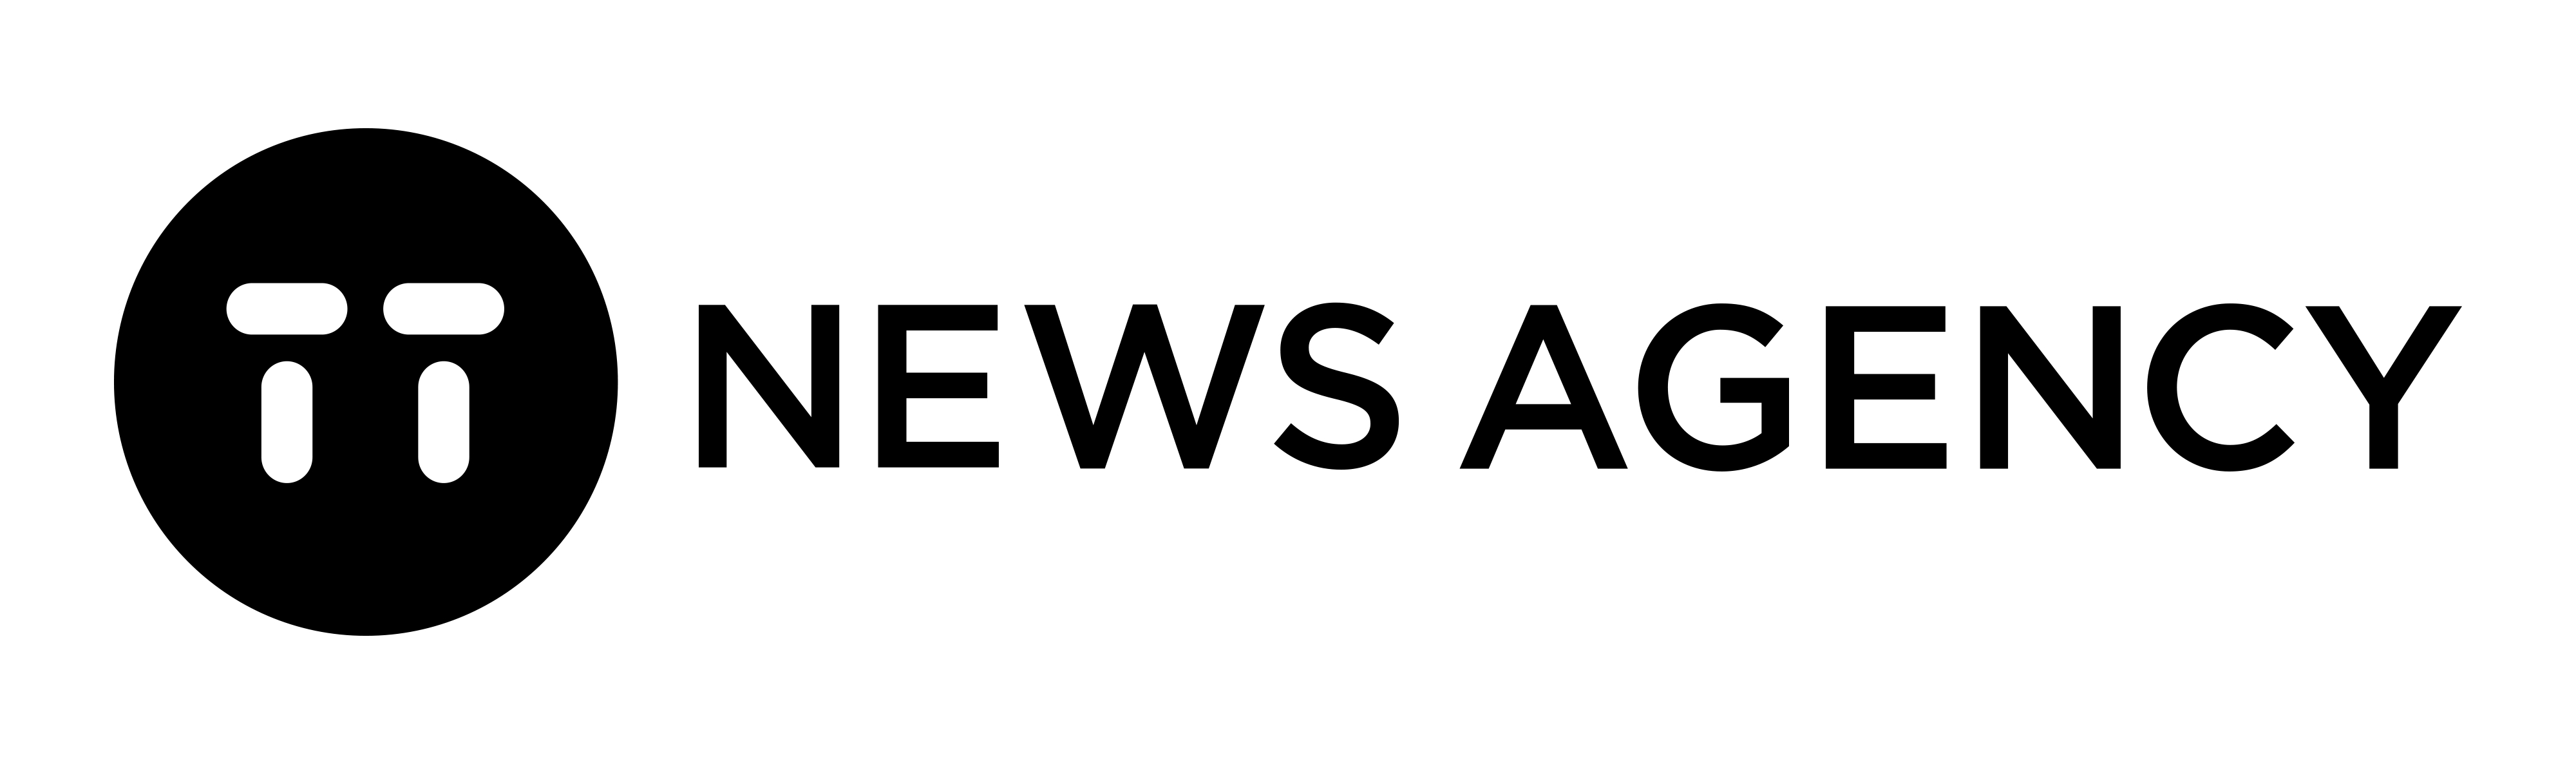 NSE agency - TT news logo